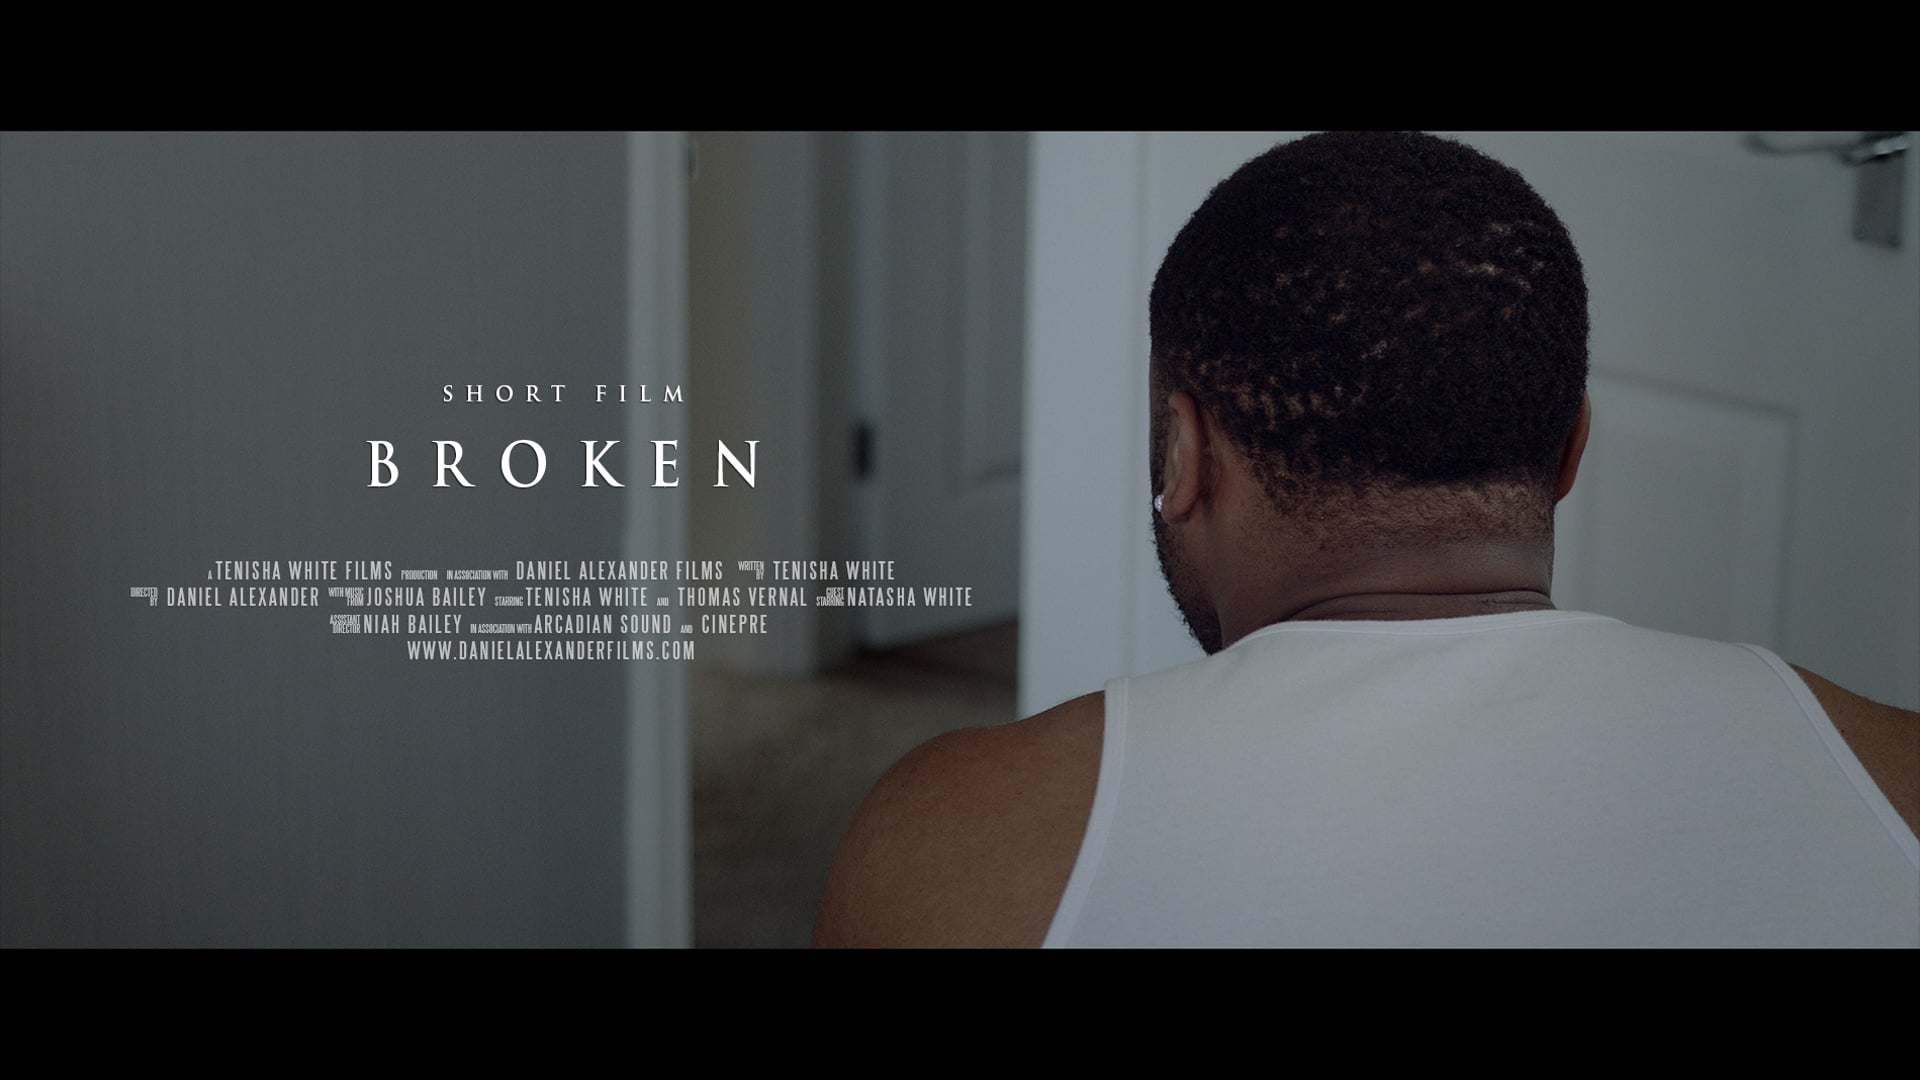 BROKEN - A short music film